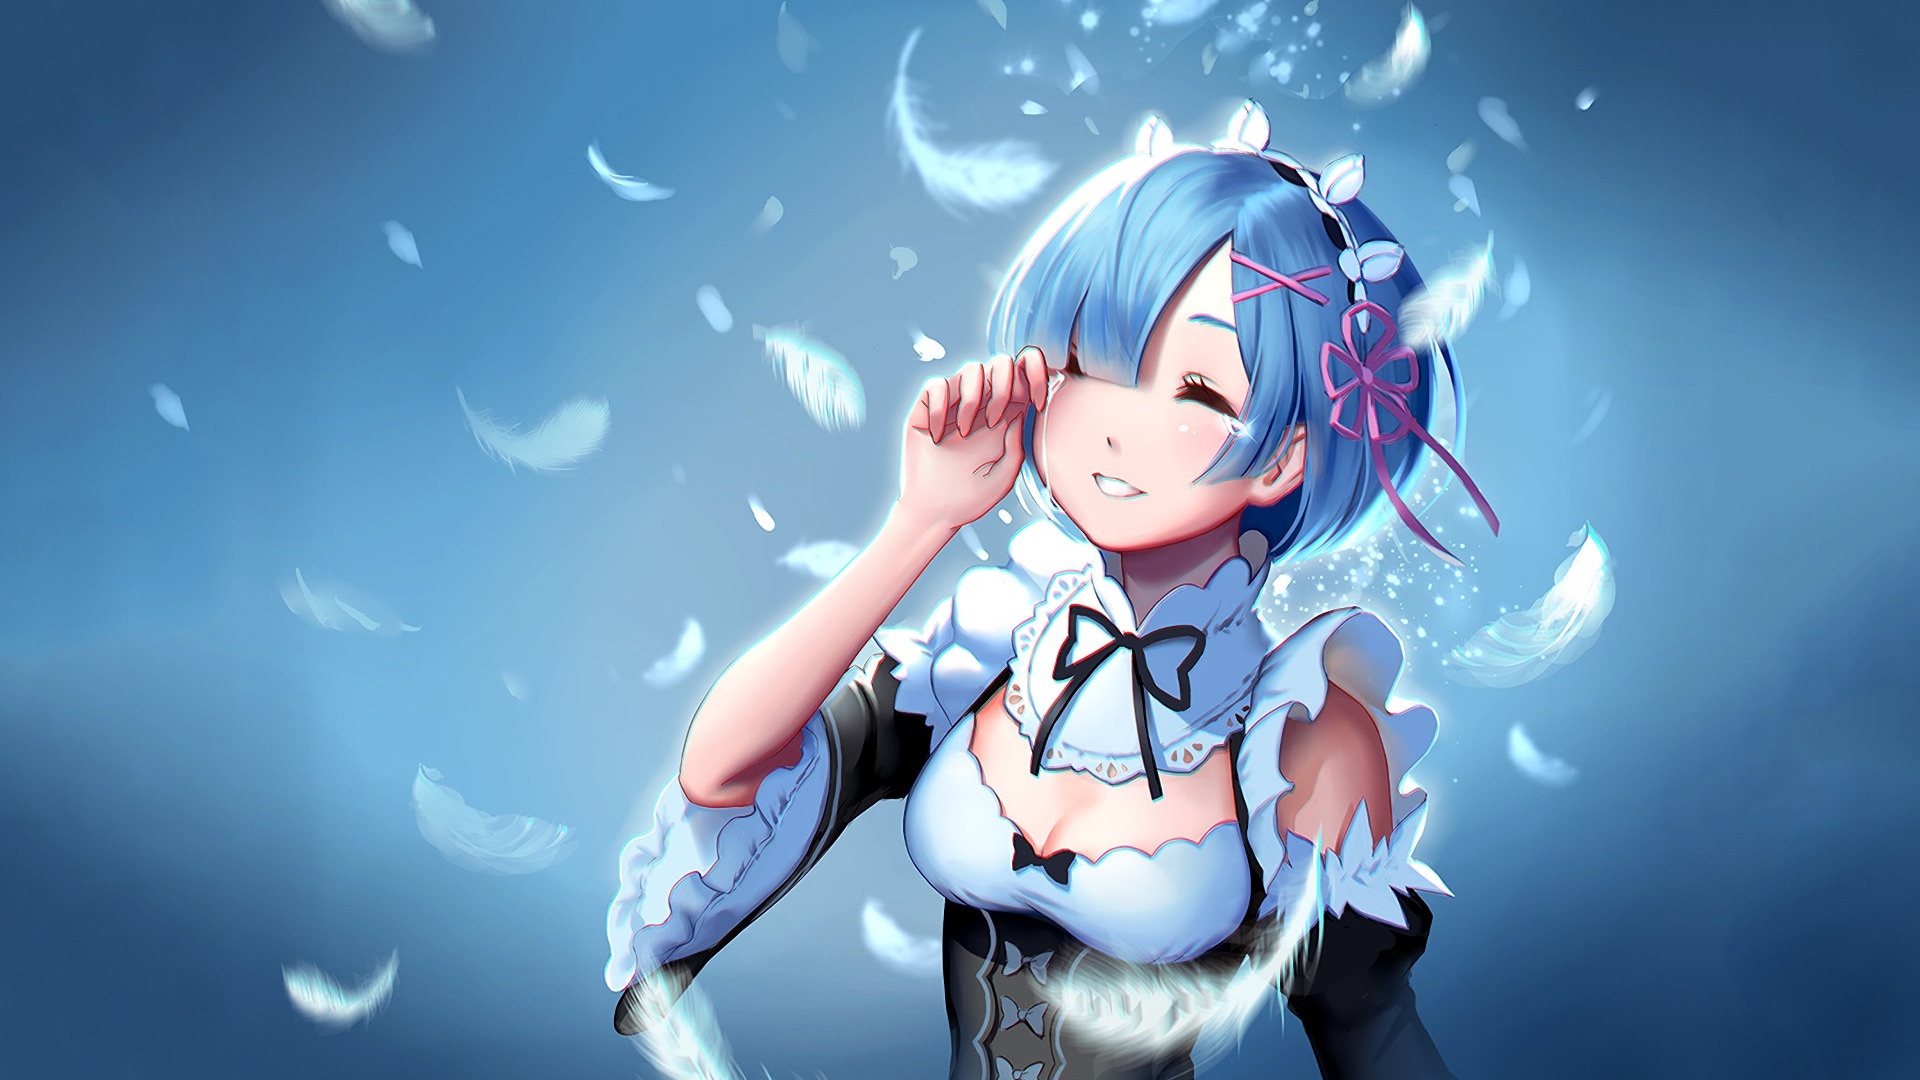 Anime Girl Smile best background